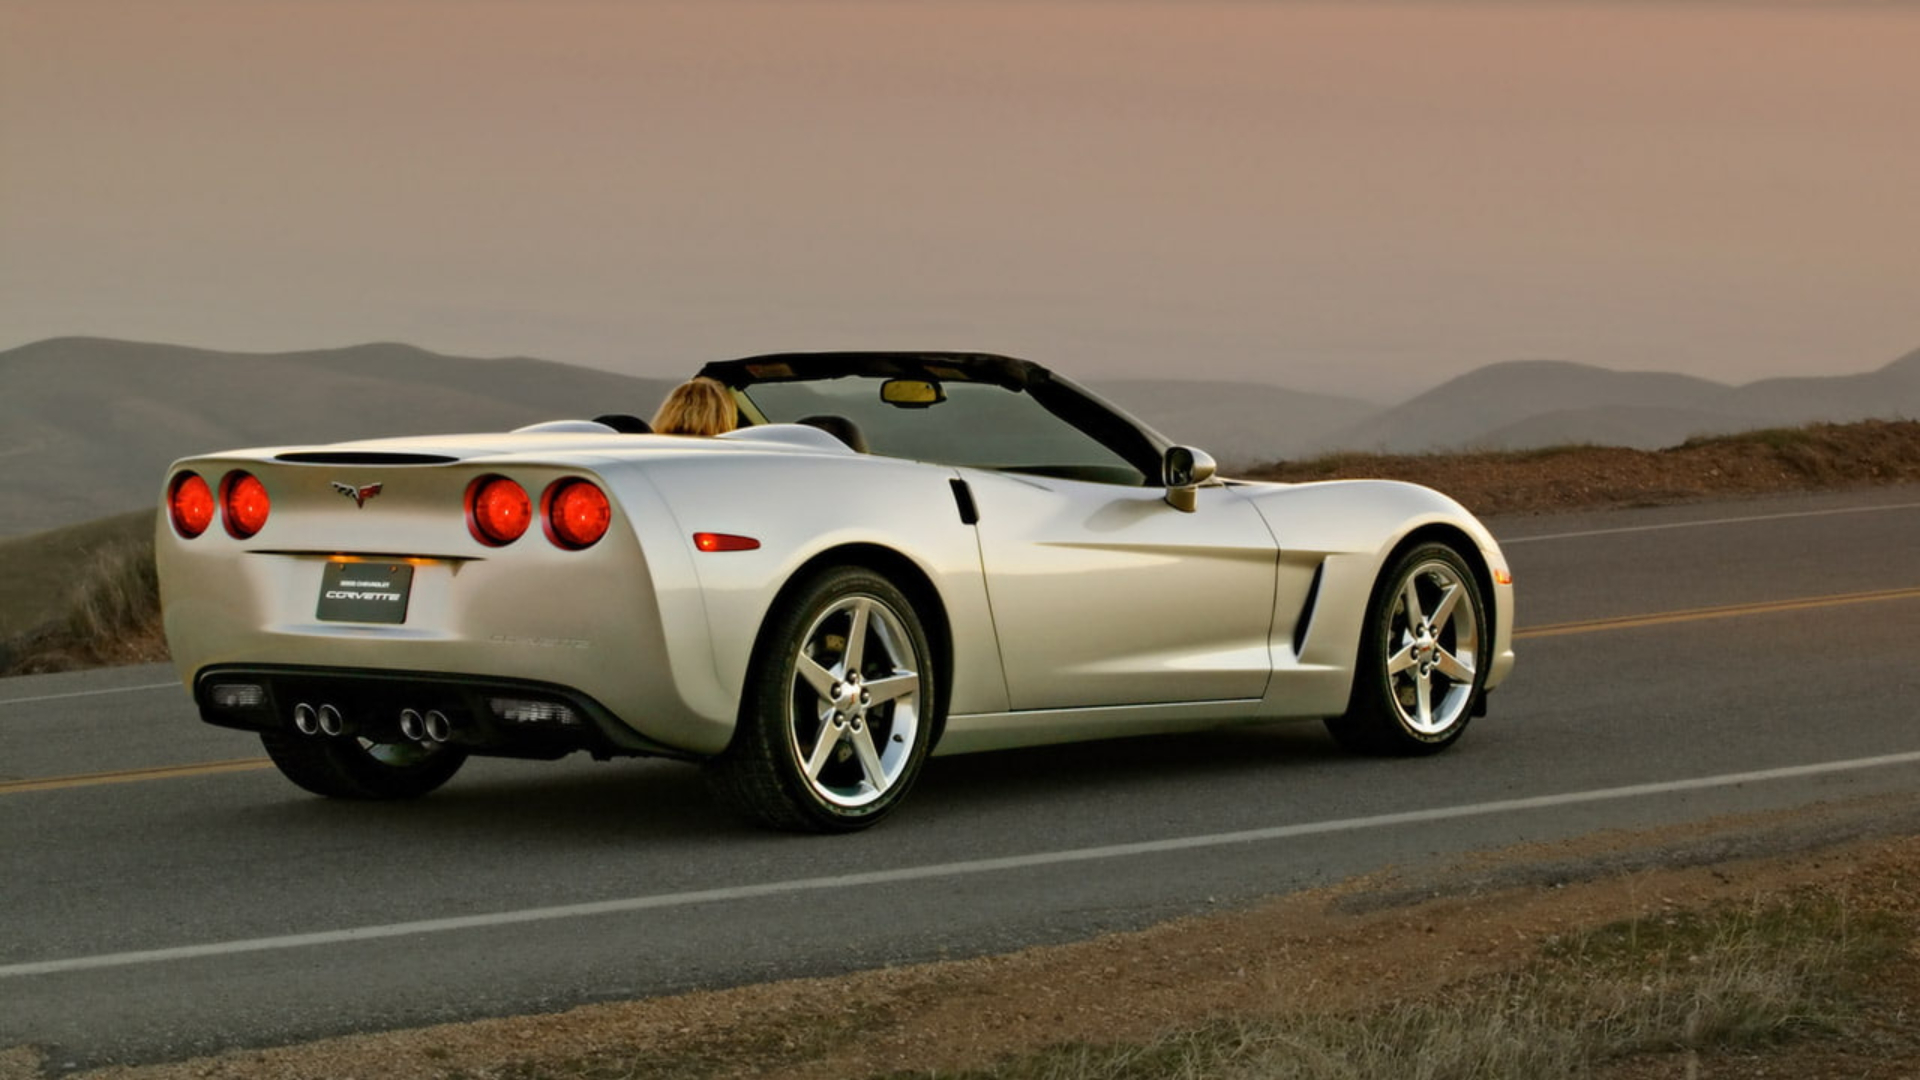 2005 Corvette Wallpapers